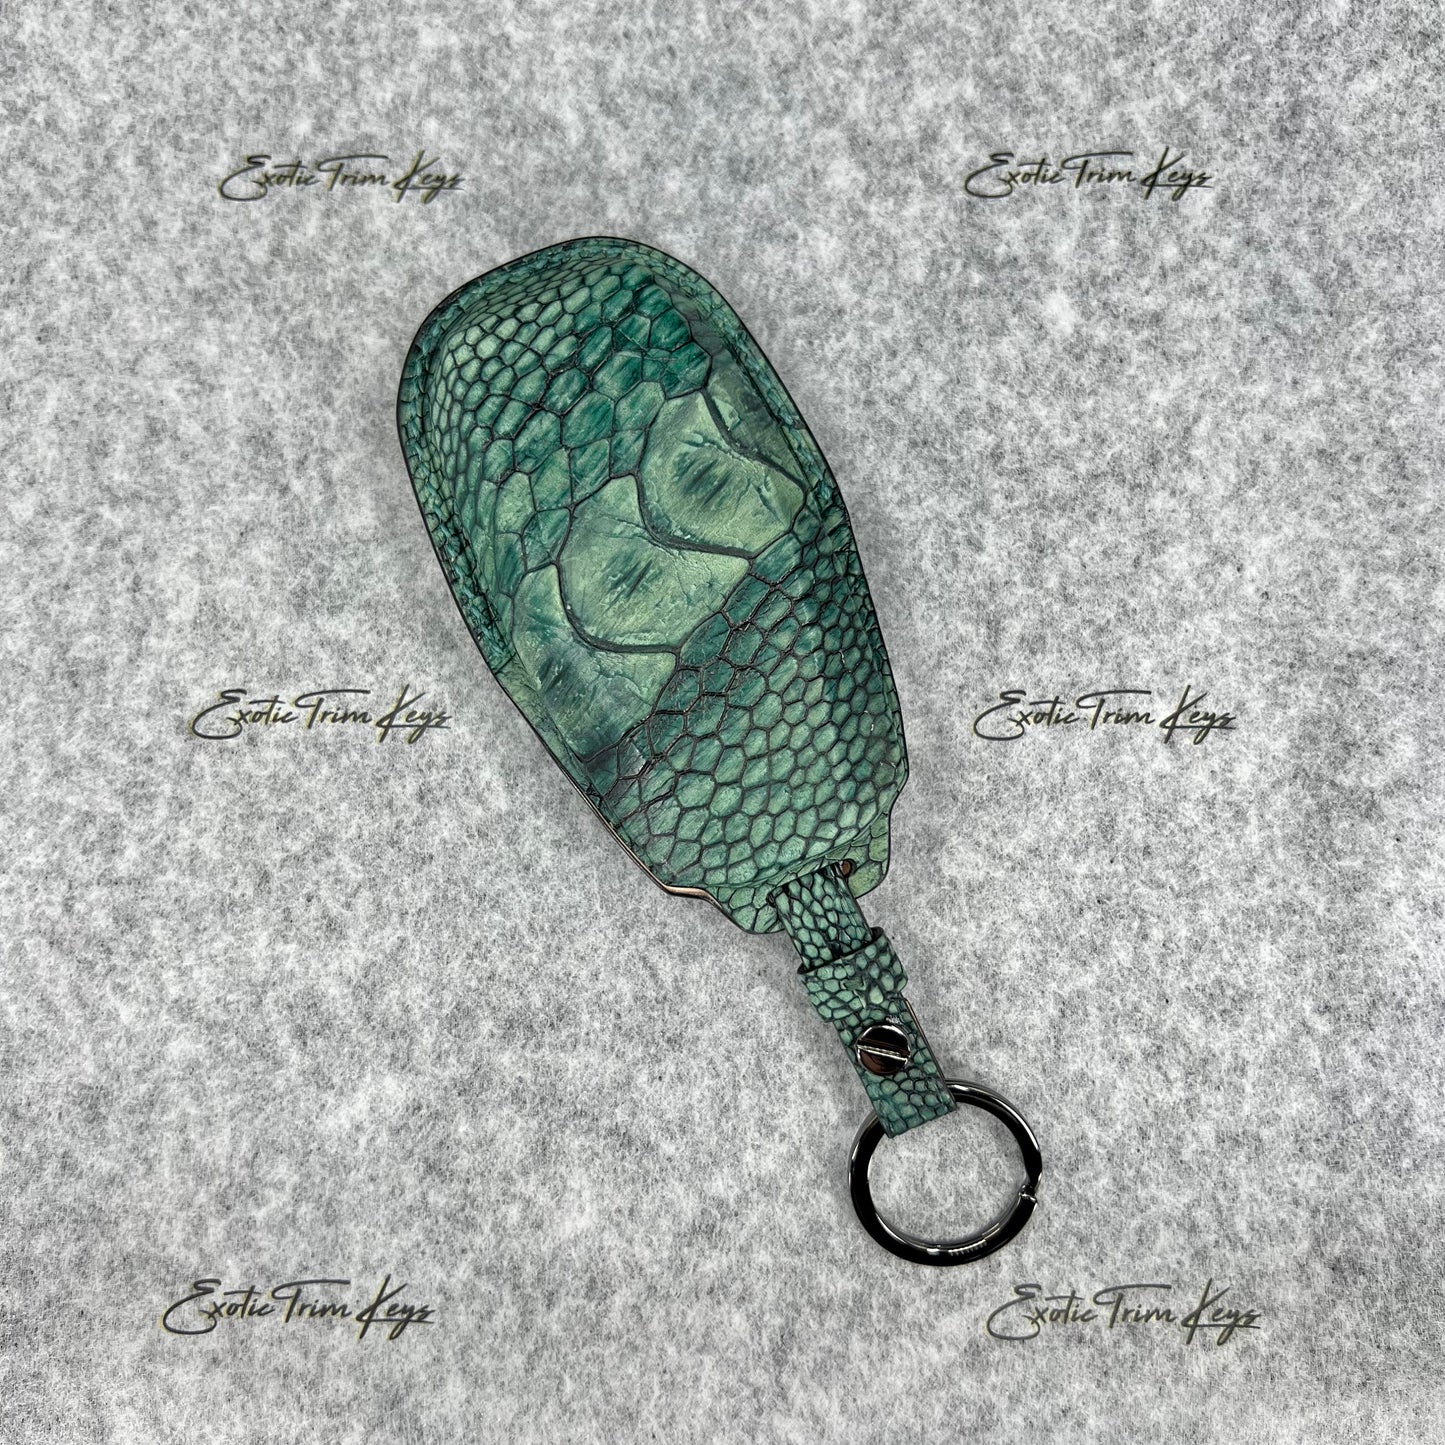 غطاء مفتاح أستون مارتن - جلد ساق النعام الأخضر / خياطة الملكيت - متوفر في المخزون